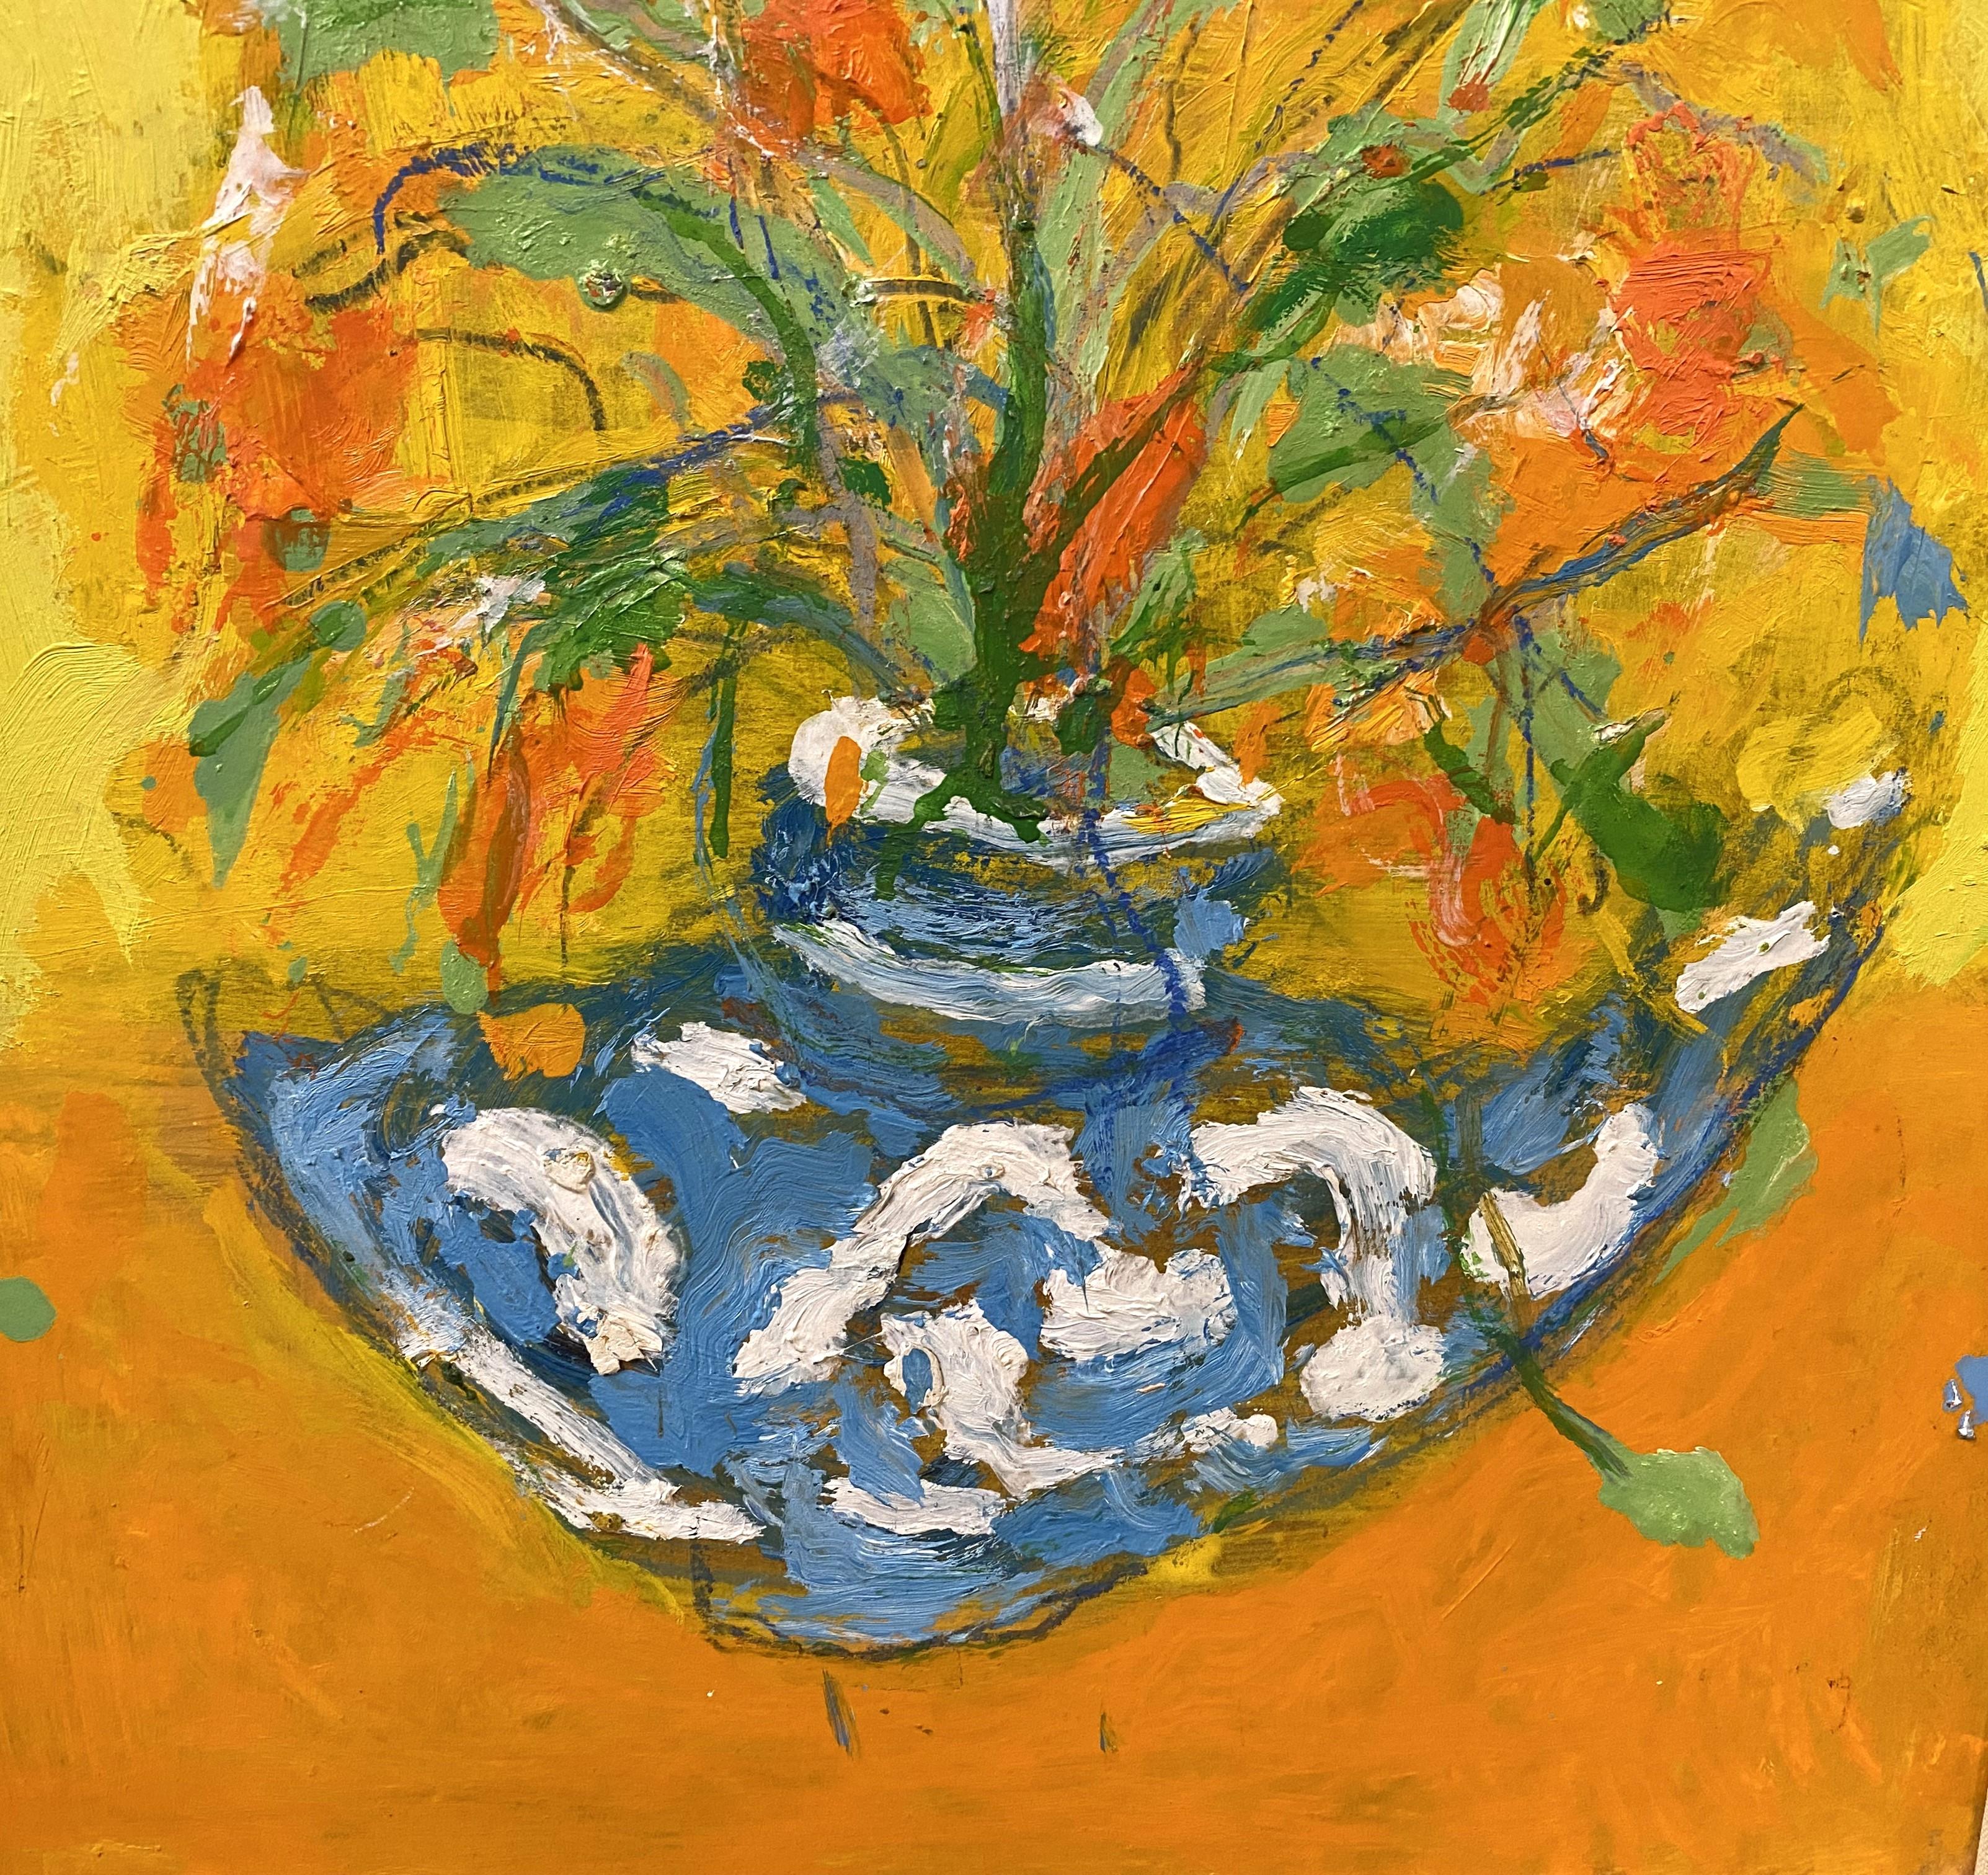 Ein schönes impressionistisches Blumenstillleben des amerikanischen Künstlers Humbert Howard (1905-1990). Howard wurde in Philadelphia geboren und gilt als eine wichtige Figur unter den zeitgenössischen afroamerikanischen Künstlern. Er studierte an